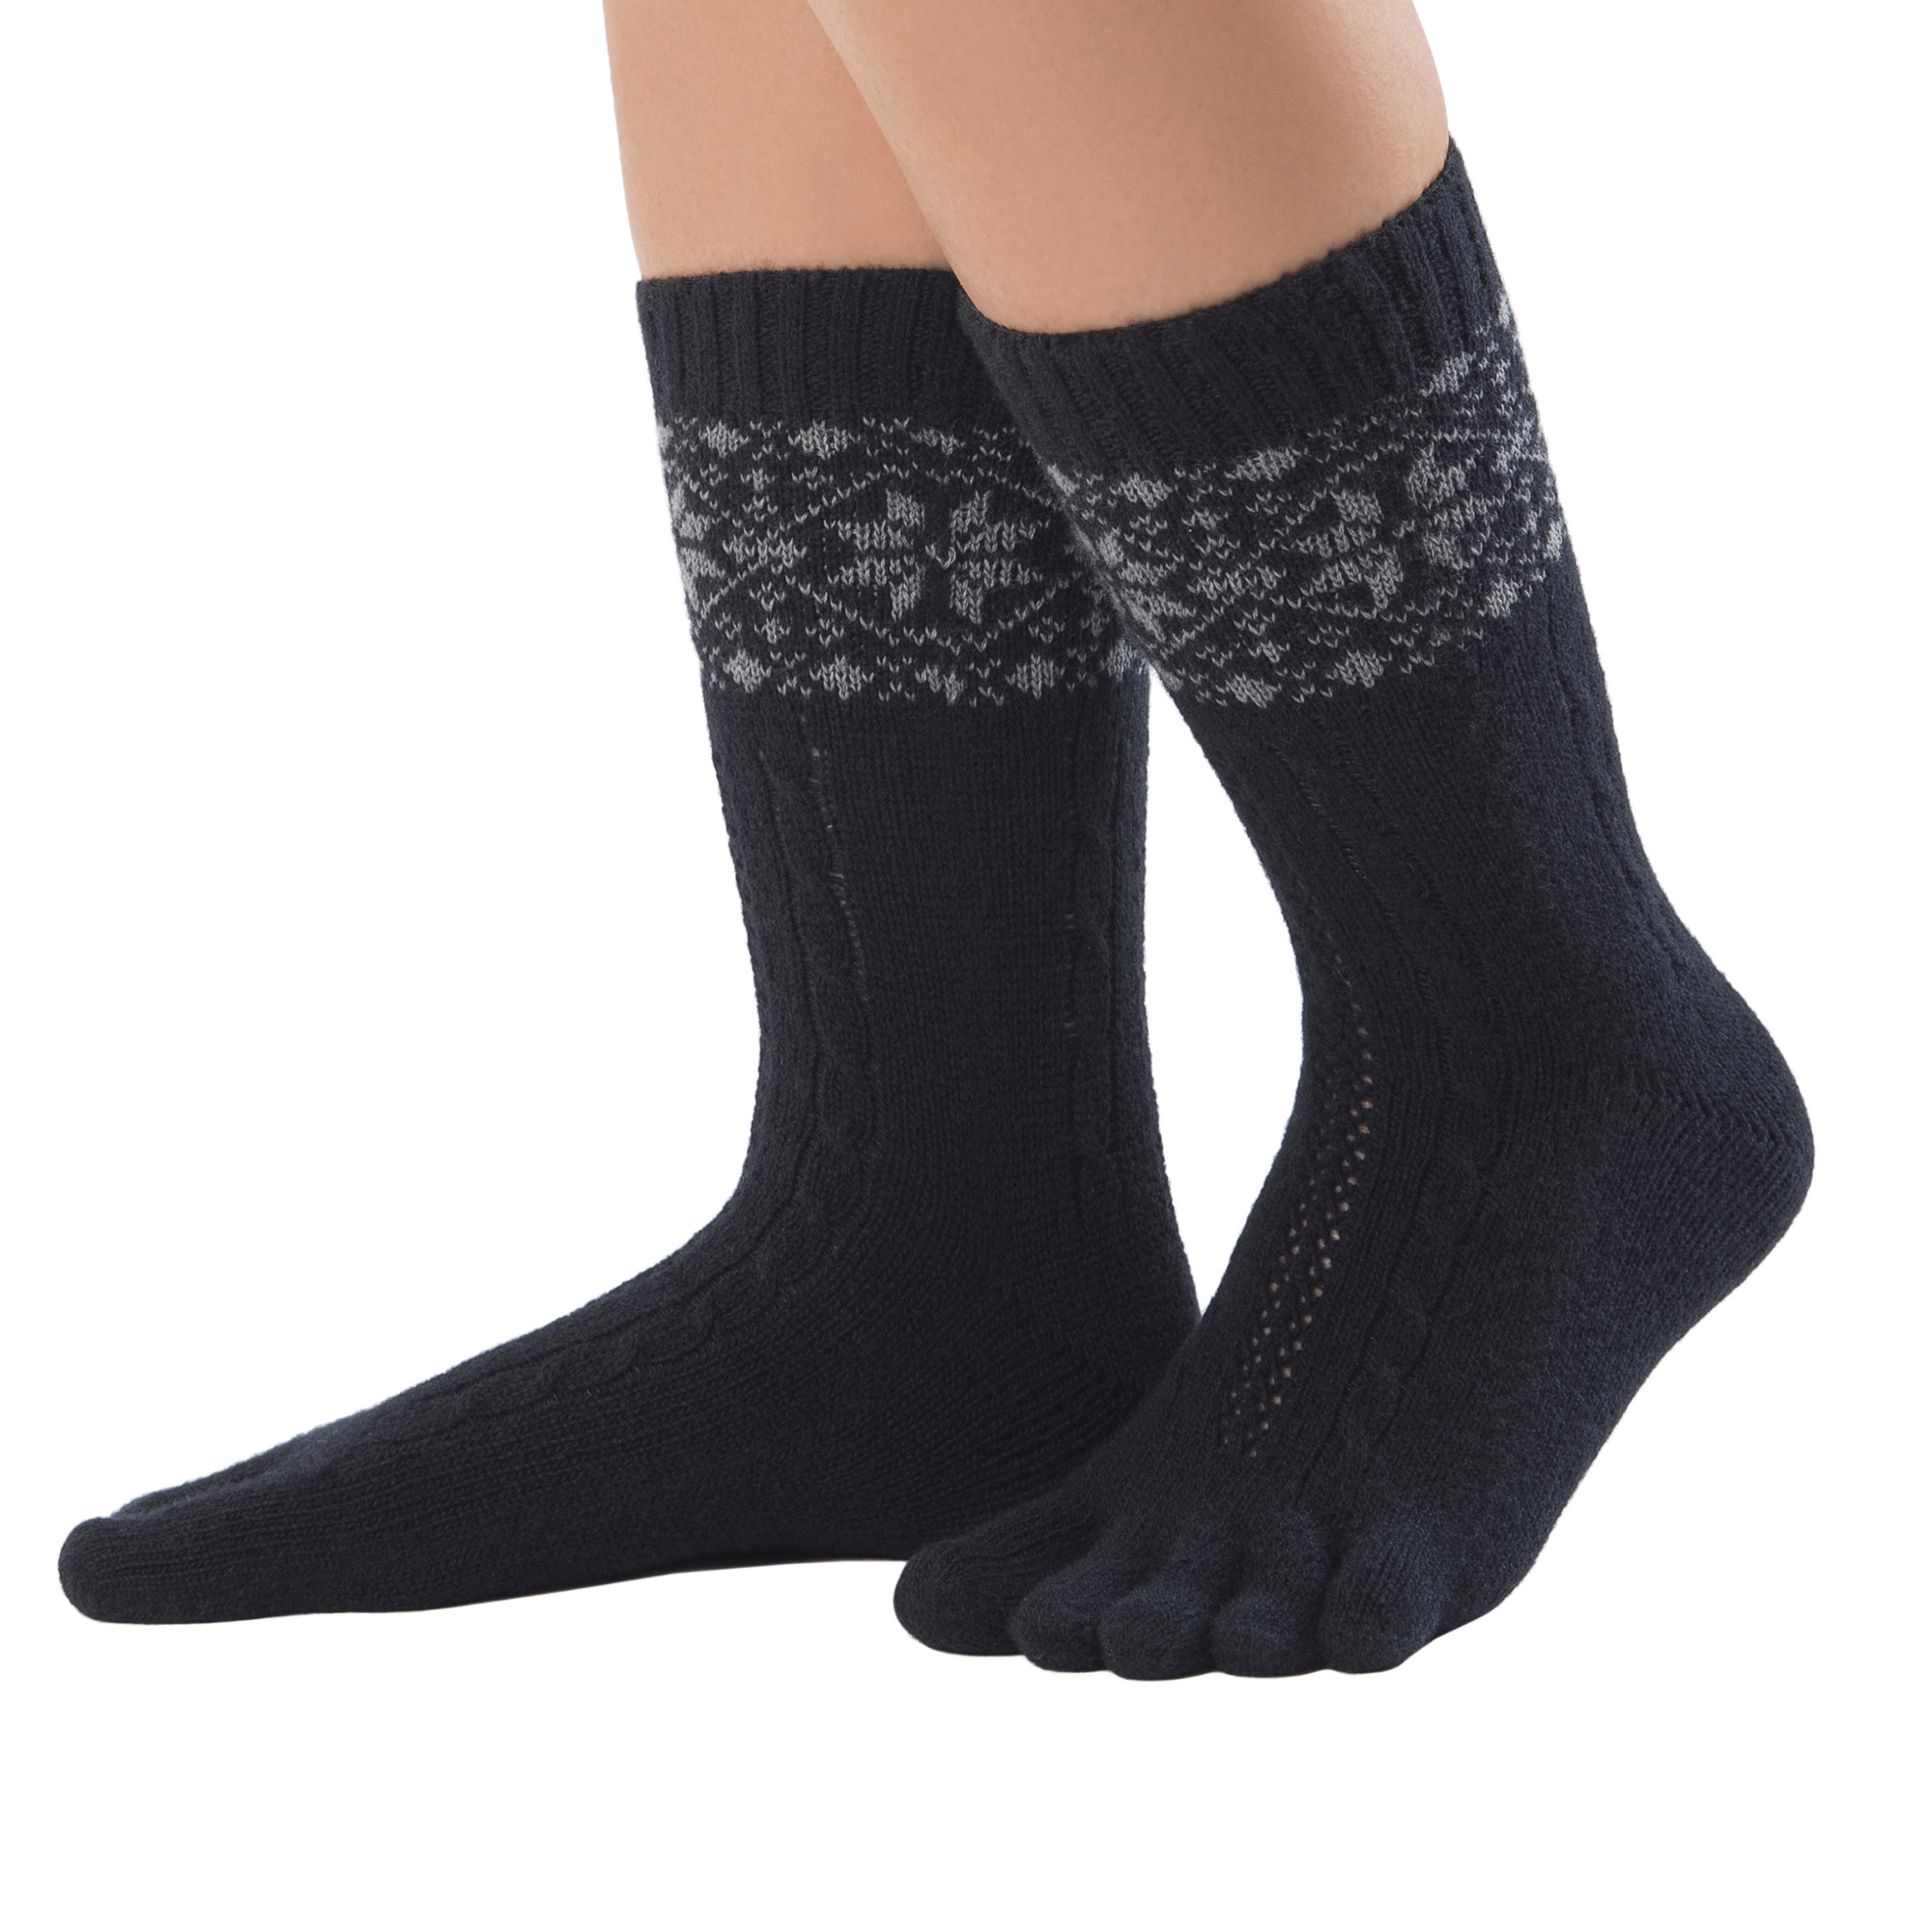  Knitido  chaussettes à orteils chaud en mérinos & cachemire avec motif de taches de neige en noir / gris